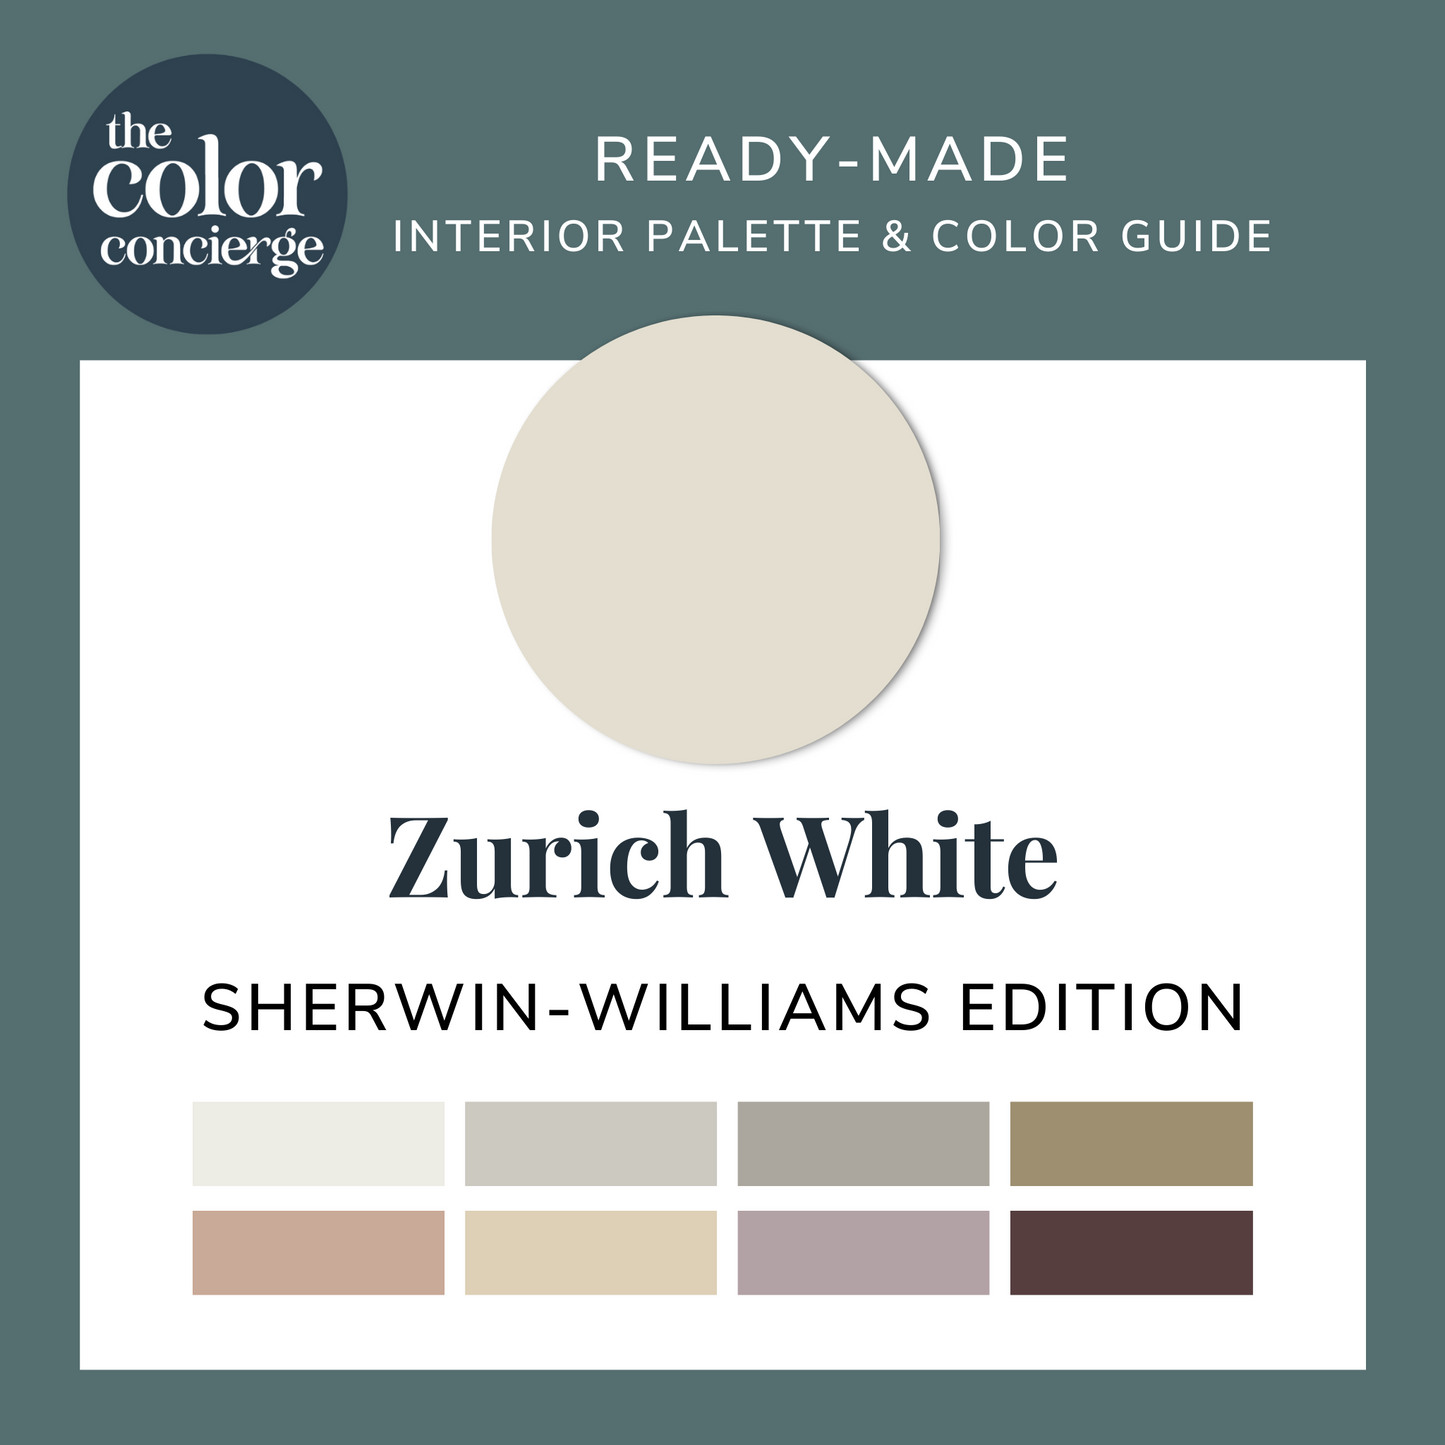 Sherwin-Williams Zurich White color palette guide